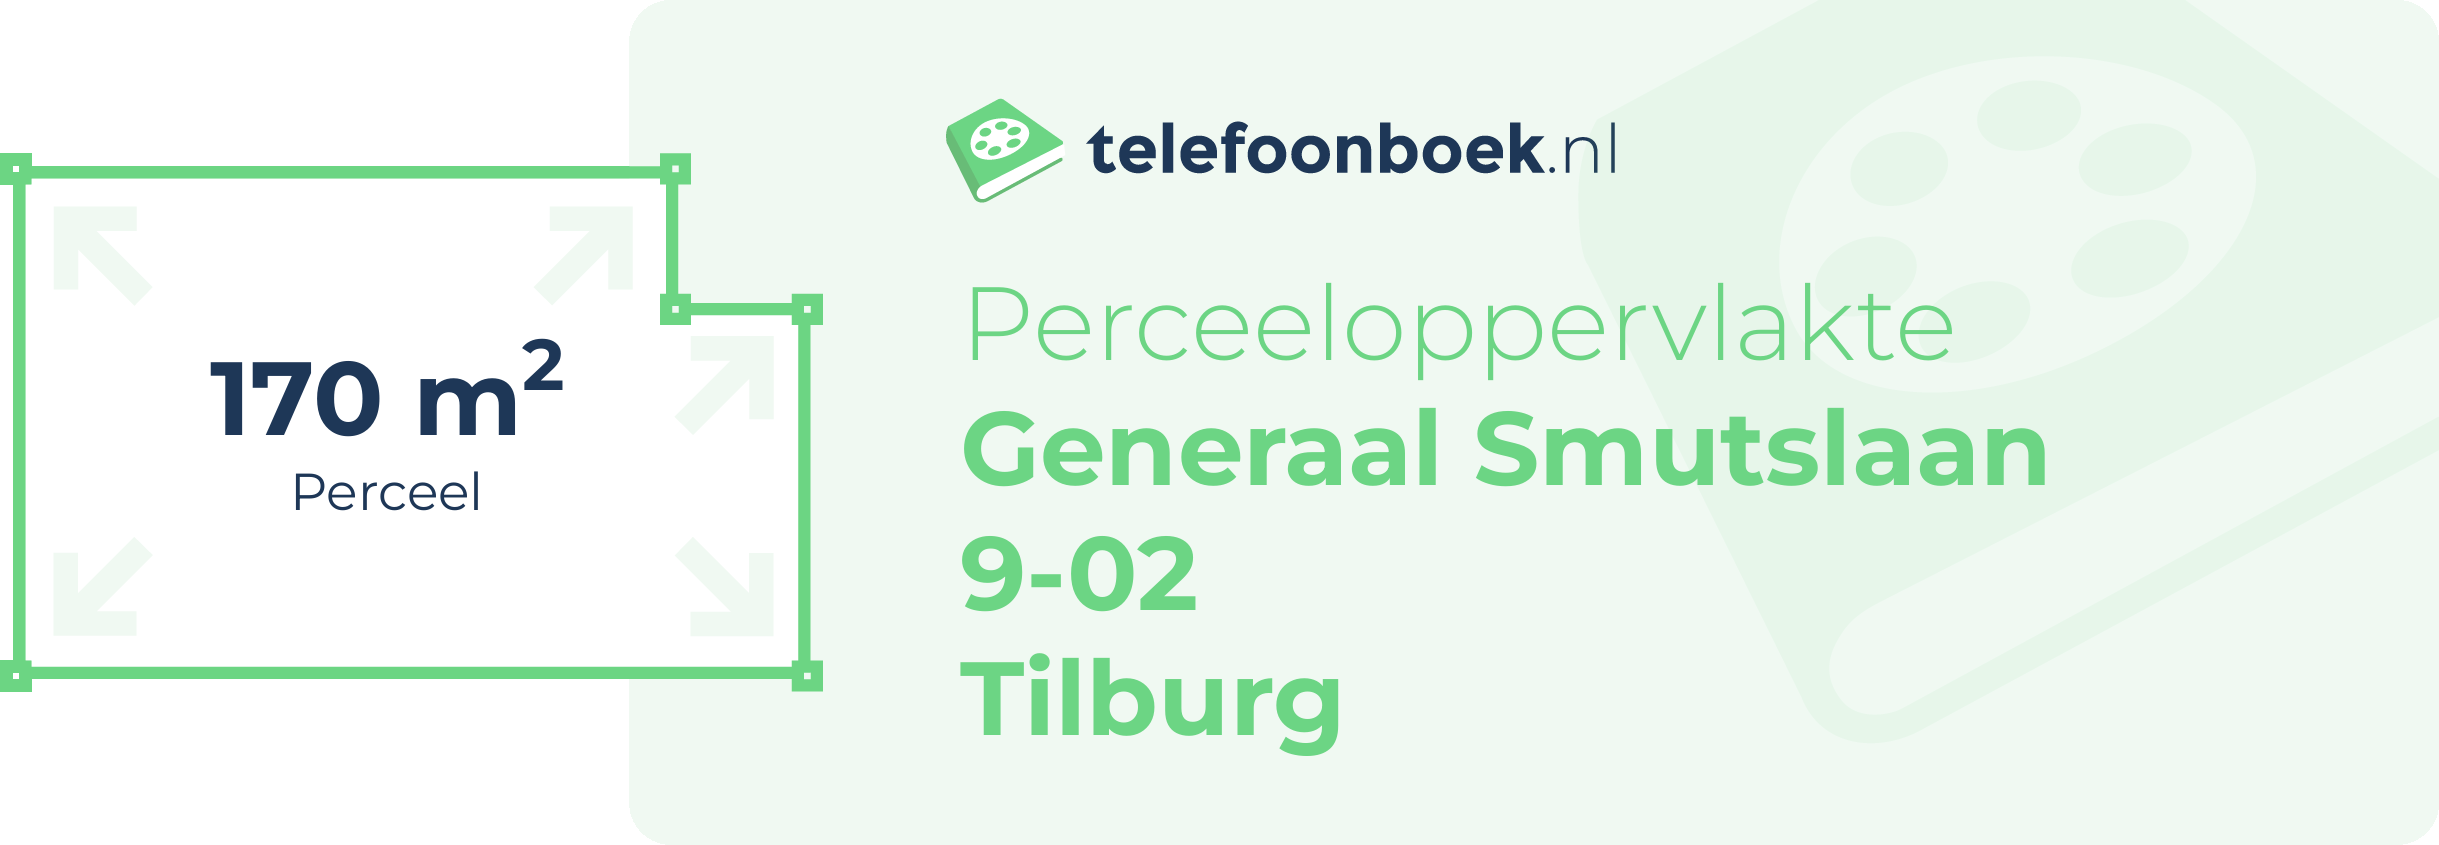 Perceeloppervlakte Generaal Smutslaan 9-02 Tilburg